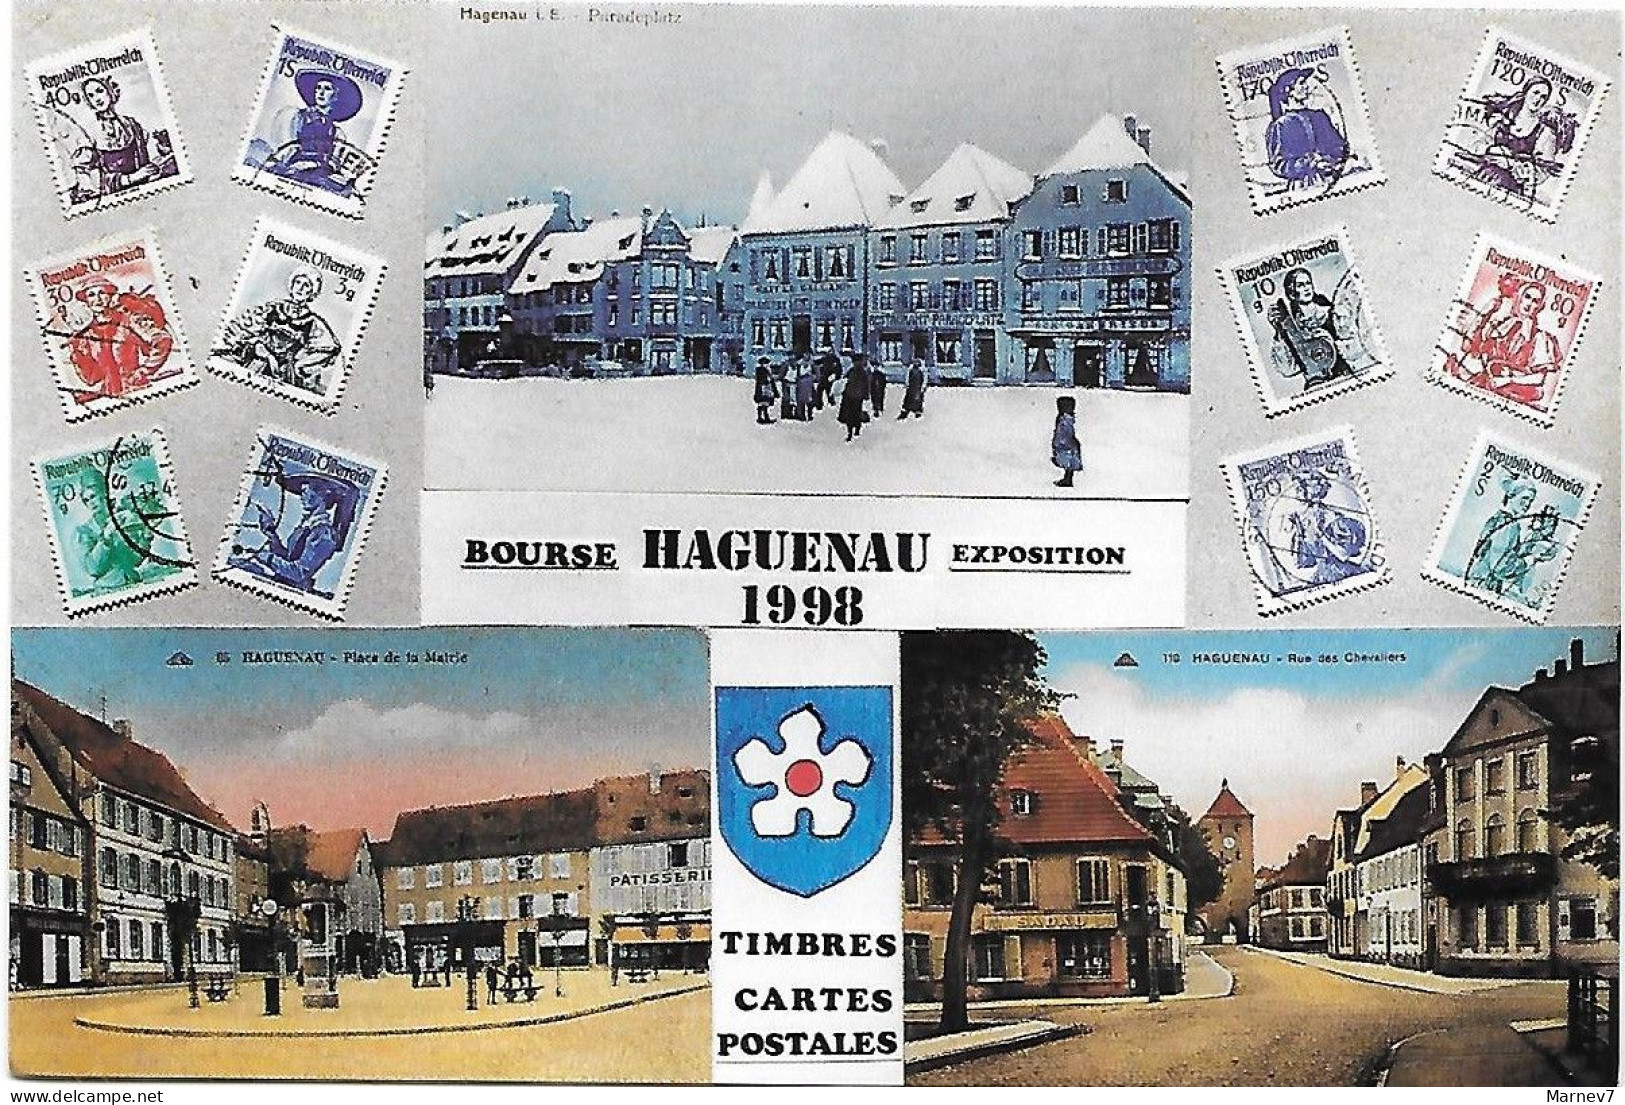 Exposition - Bourse Timbres Cartes - HAGUENAU - Bas Rhin -1993 1994 1996 1997 1998- Vues De La Ville - 5 Cartes - Demonstrations